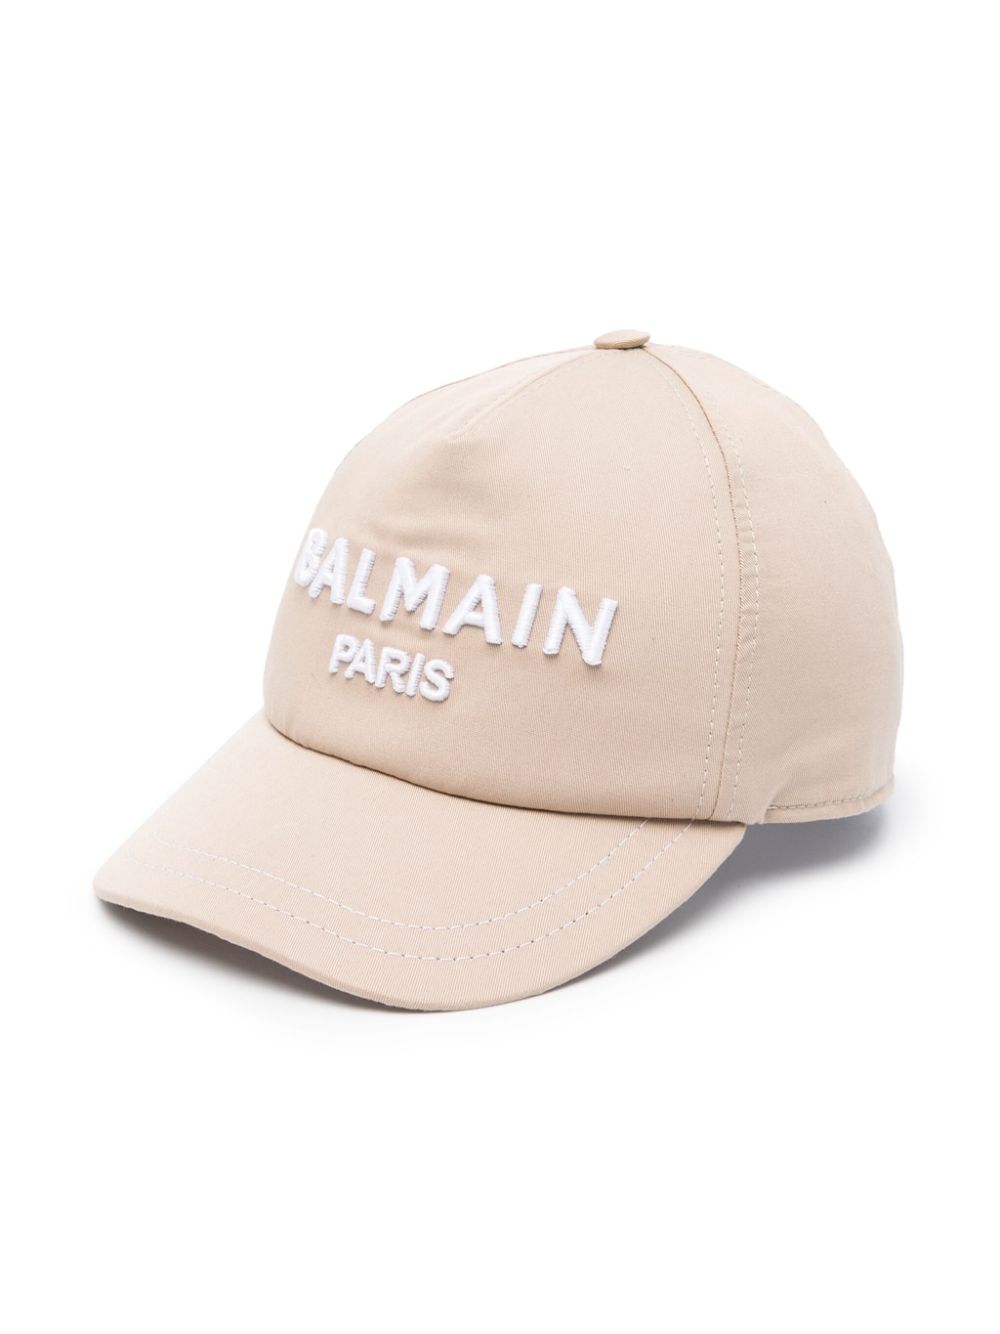 Balmain Kids cappello con logo